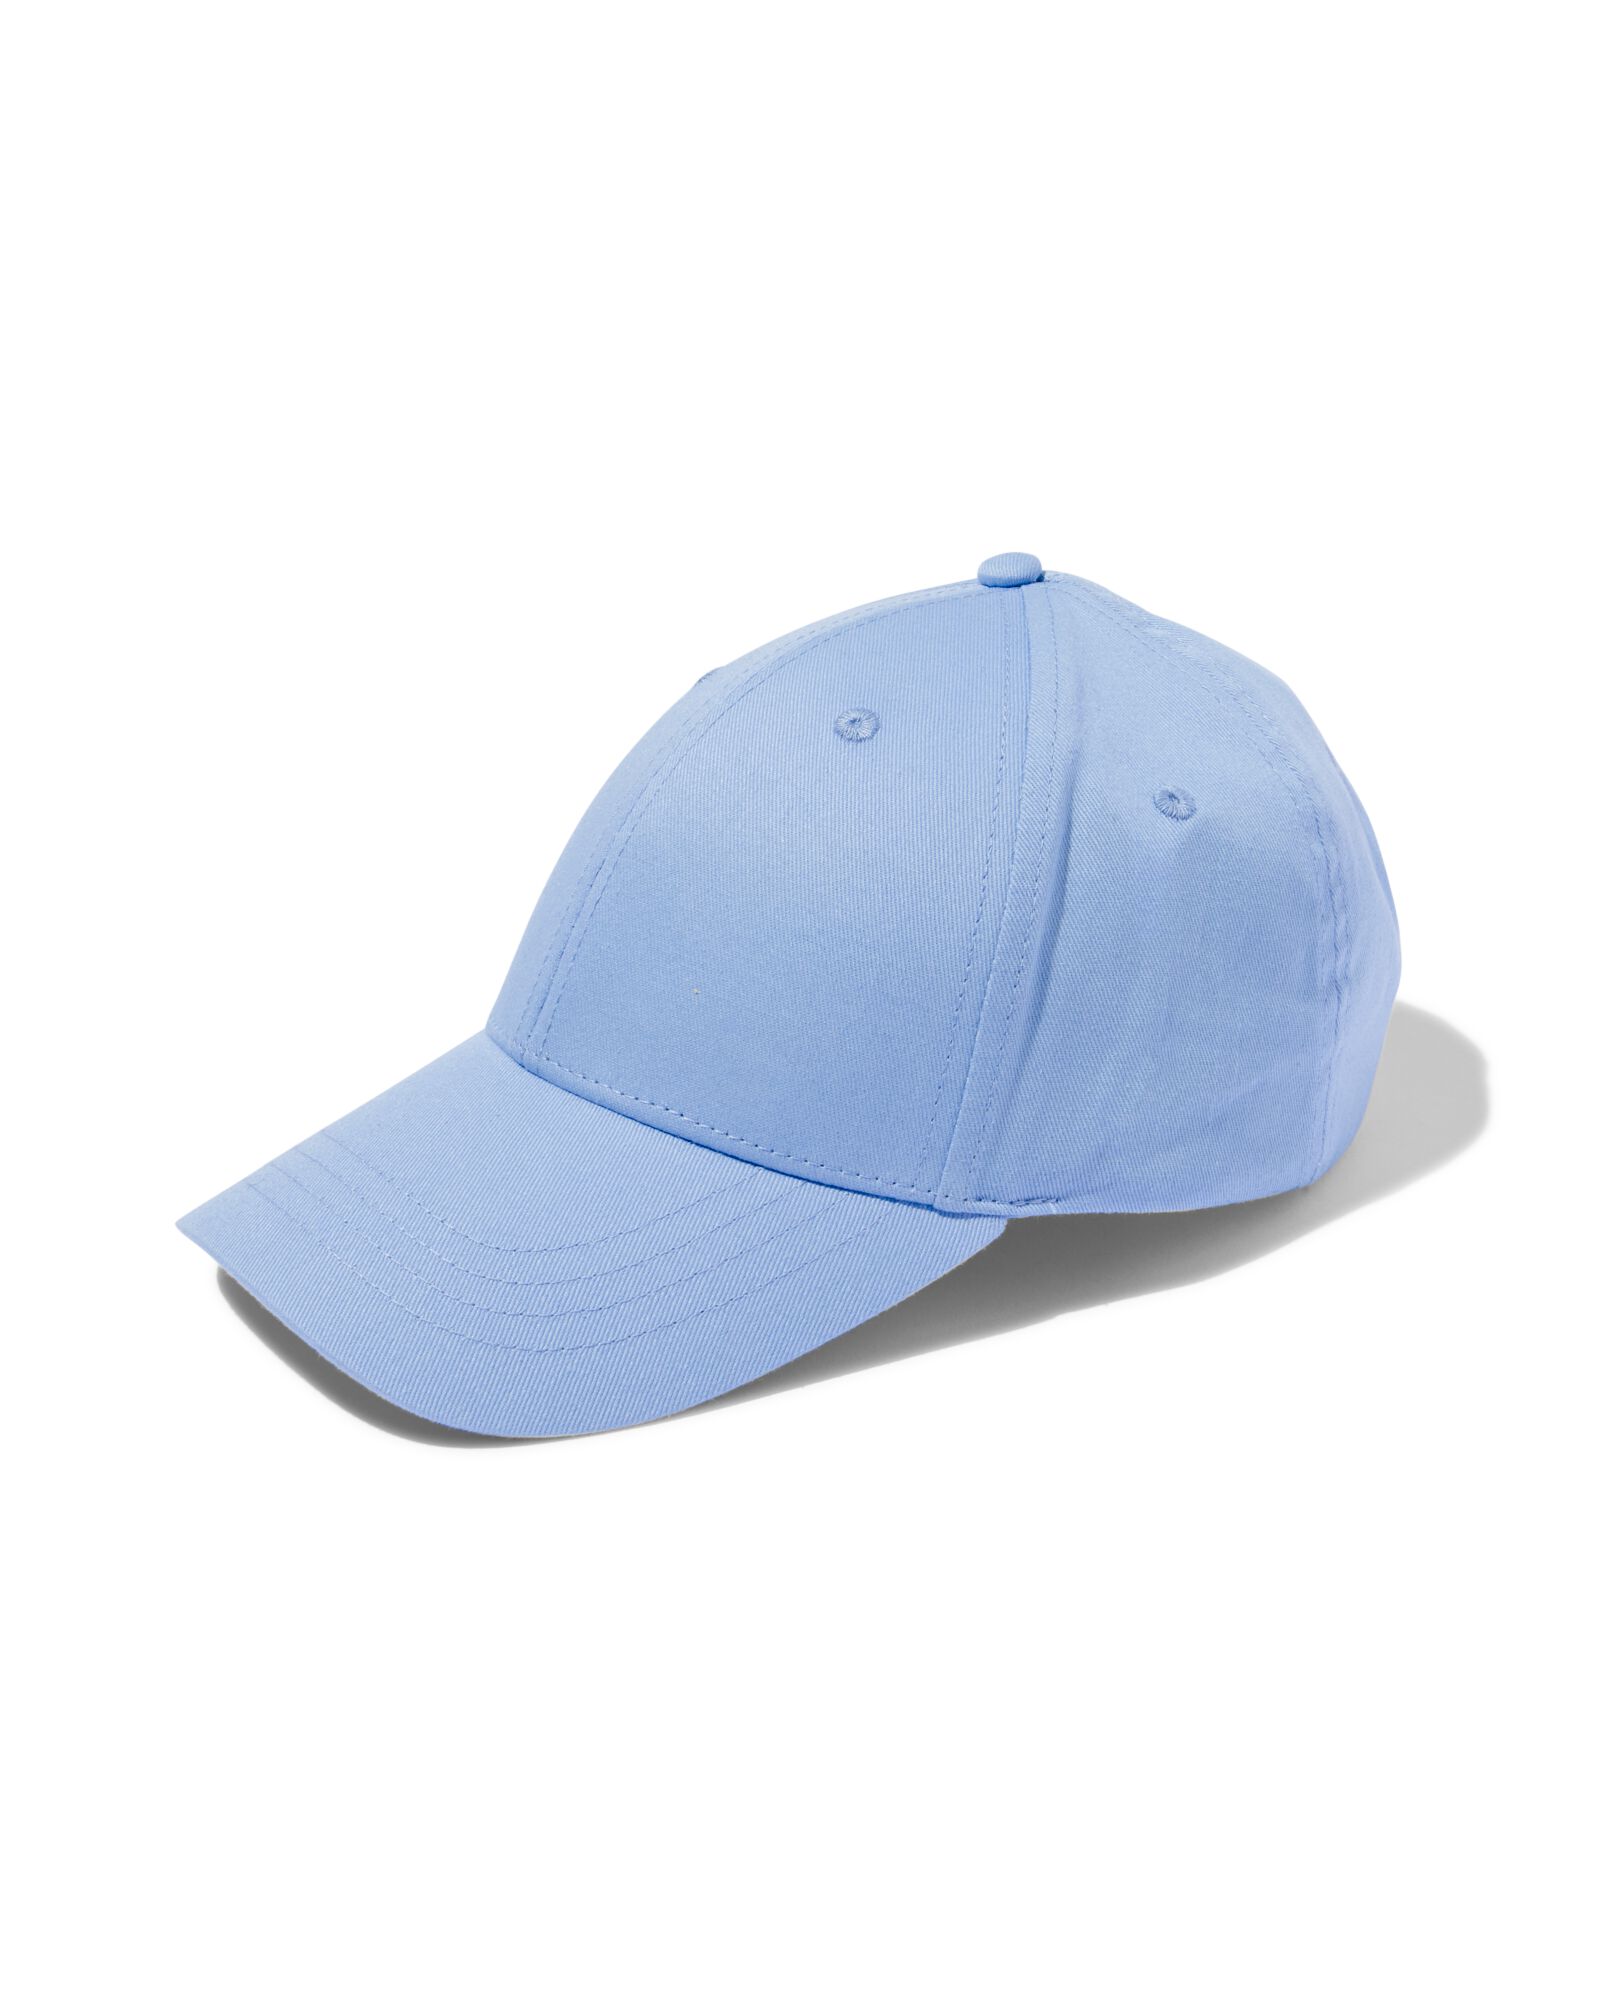 hema casquette enfant avec rabat coton bleu (bleu)